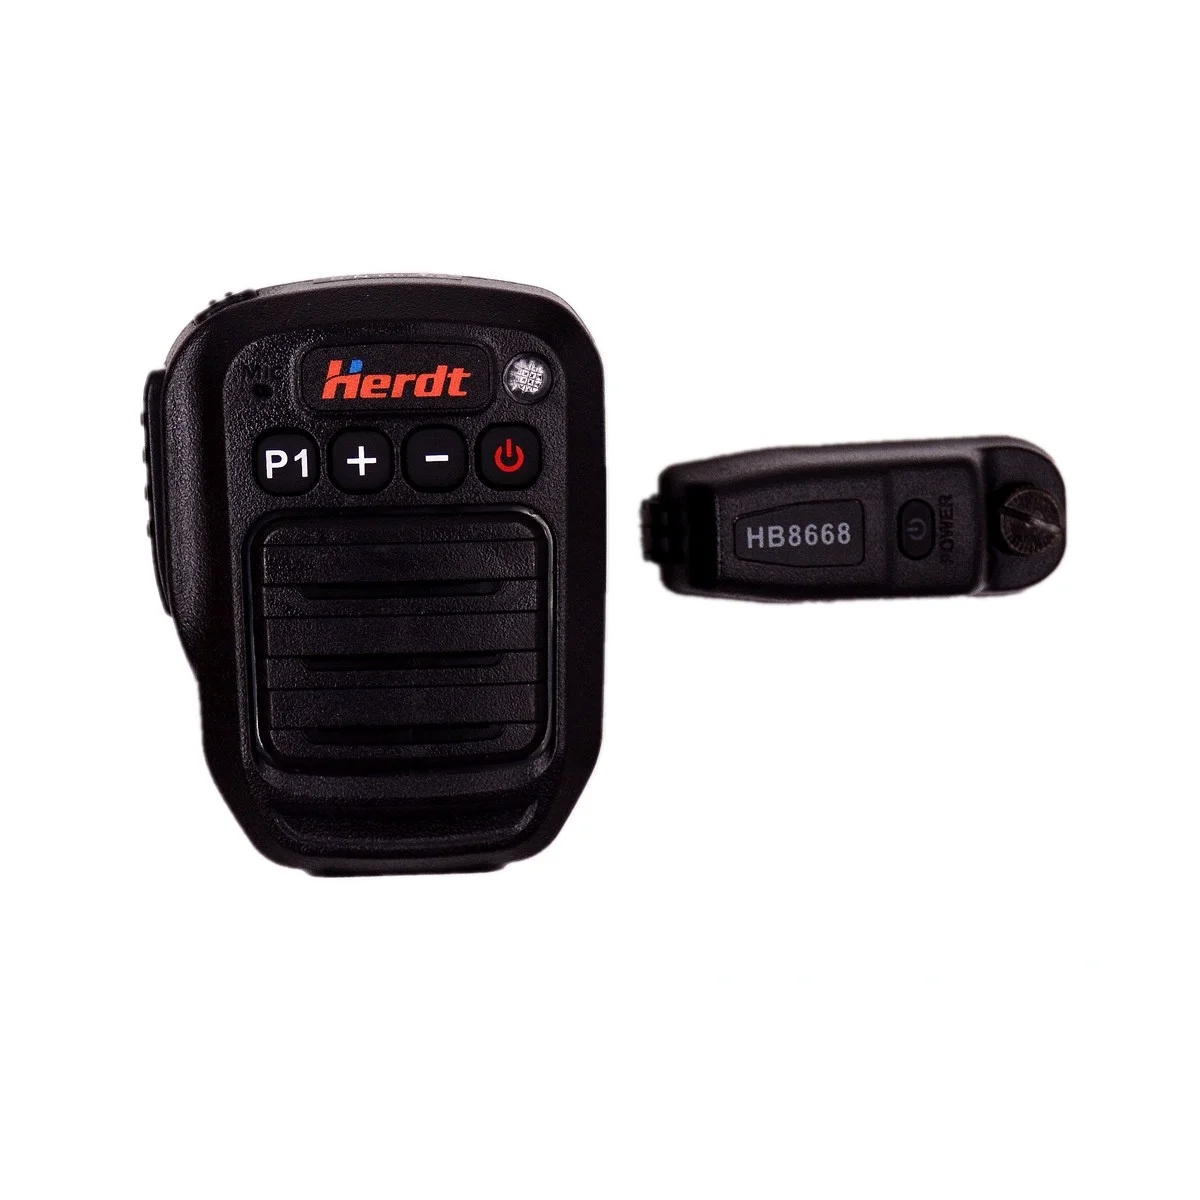 Micrófono HAM, Altavoz Bluetooth y adaptador PTT para Motorola P8668 XPR6550 P1 +/-botón, Radio Ham, micrófono inalámbrico